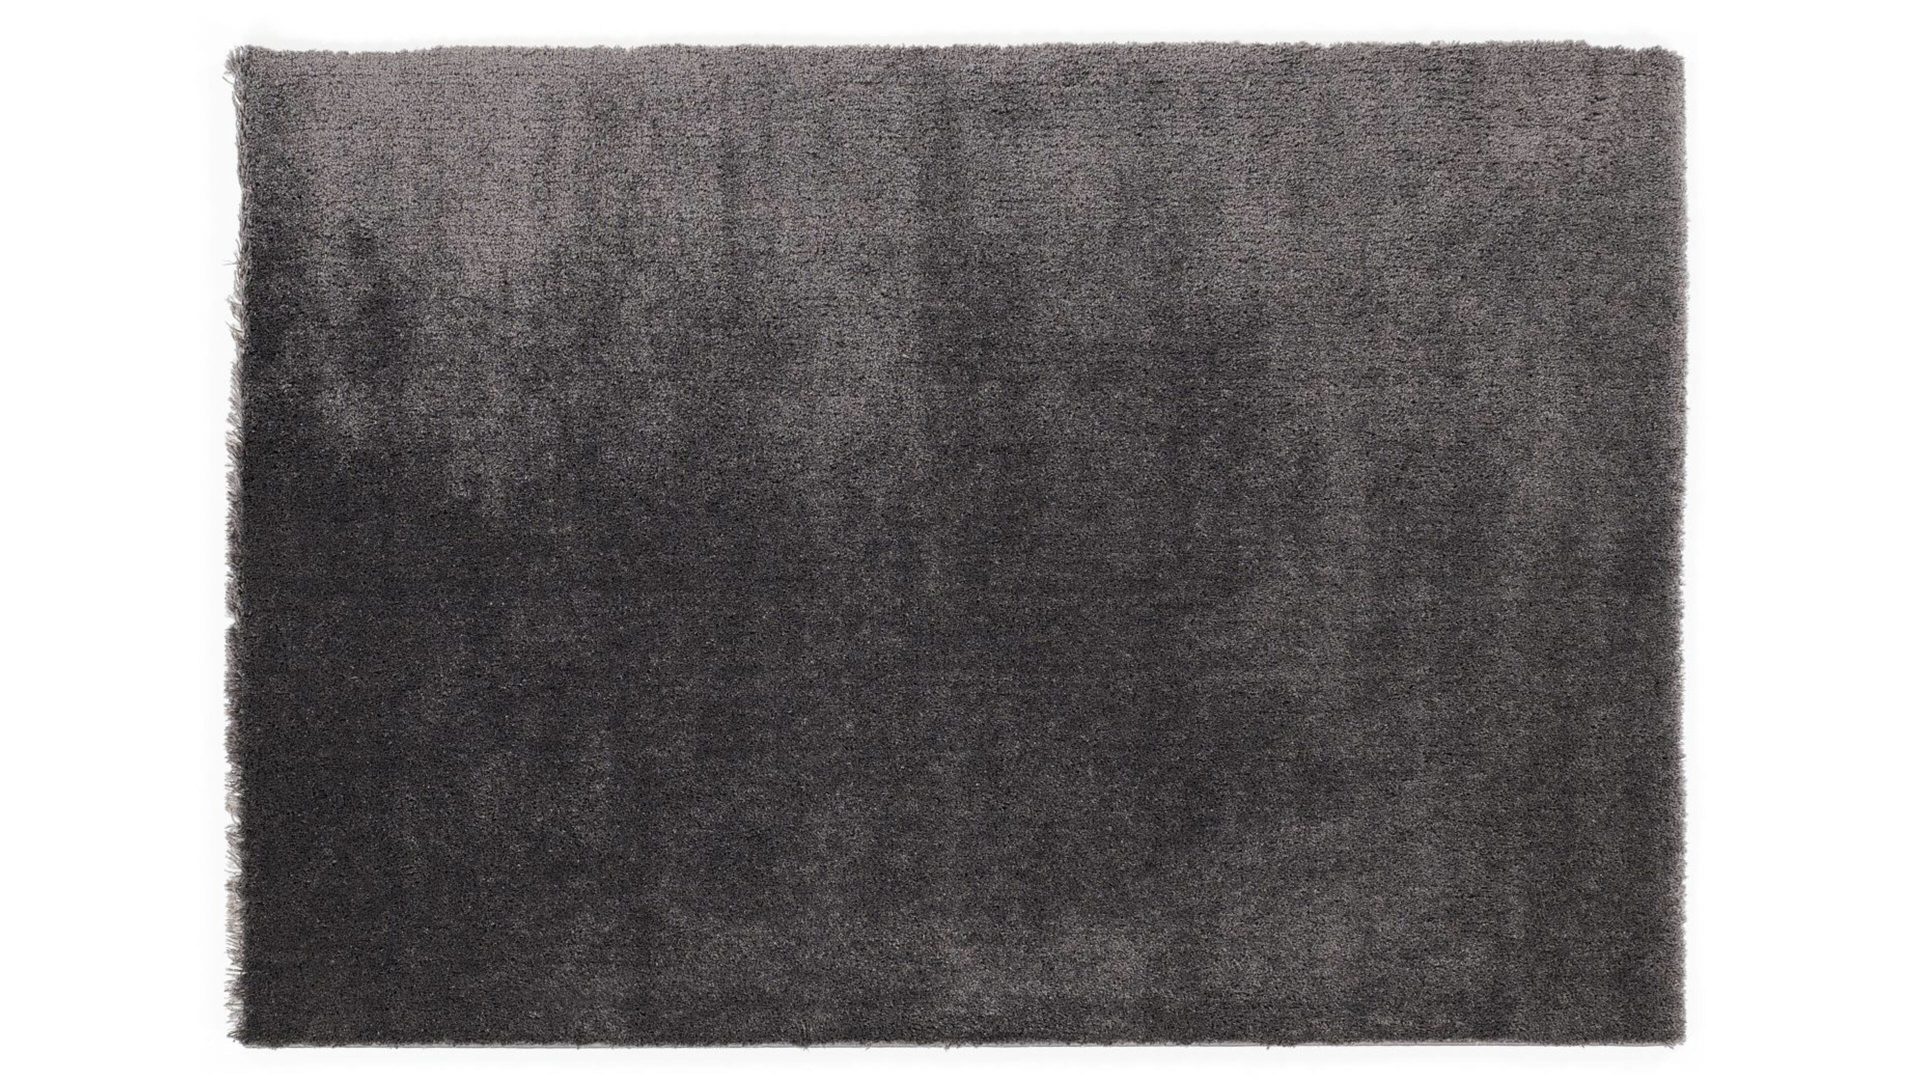 Shaggyteppich Oci aus Kunstfaser in Schwarz Shaggyteppich Royal Shaggy für Ihre Wohnaccessoires quarzfarbene Kunstfaser – ca. 80 x 150 cm